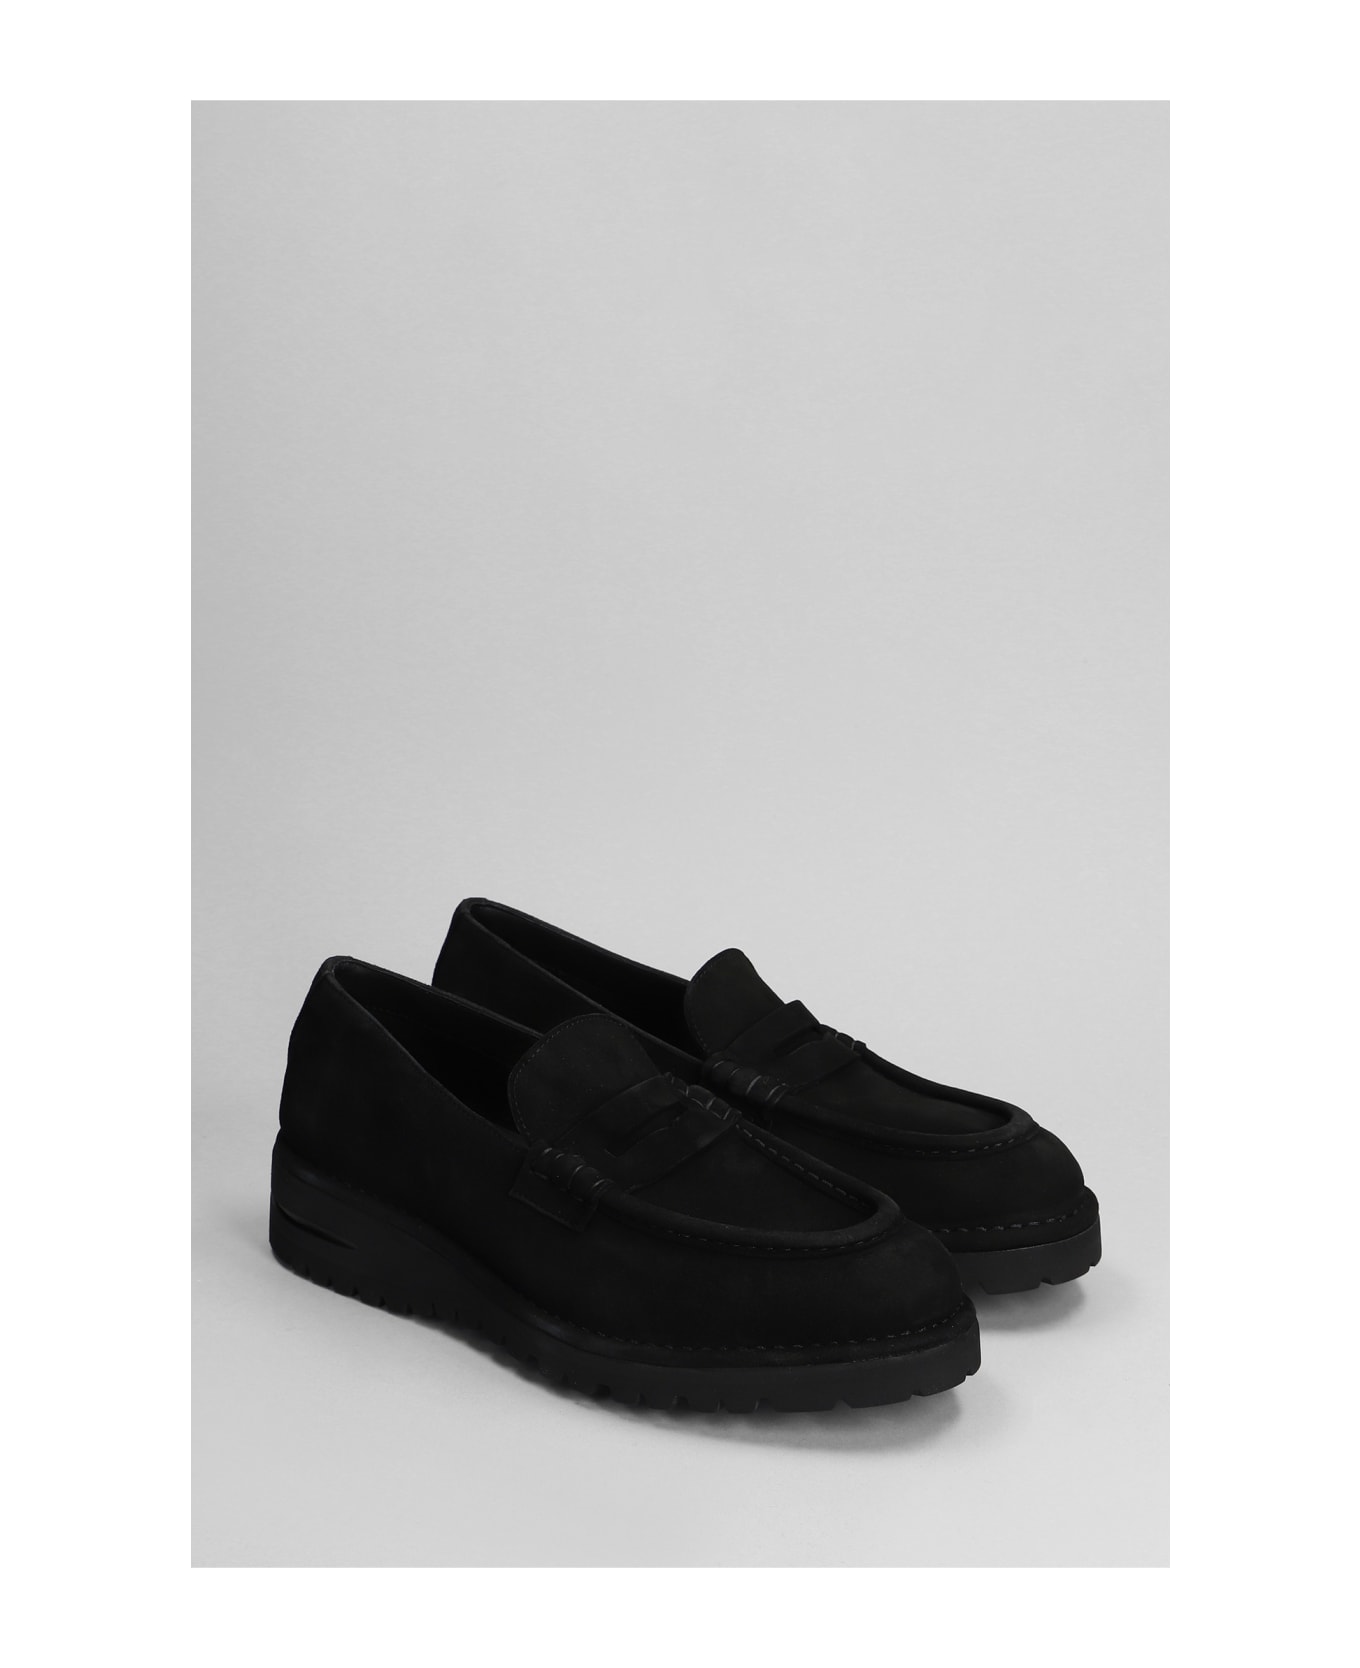 Giorgio Armani Loafers In Black Suede - black